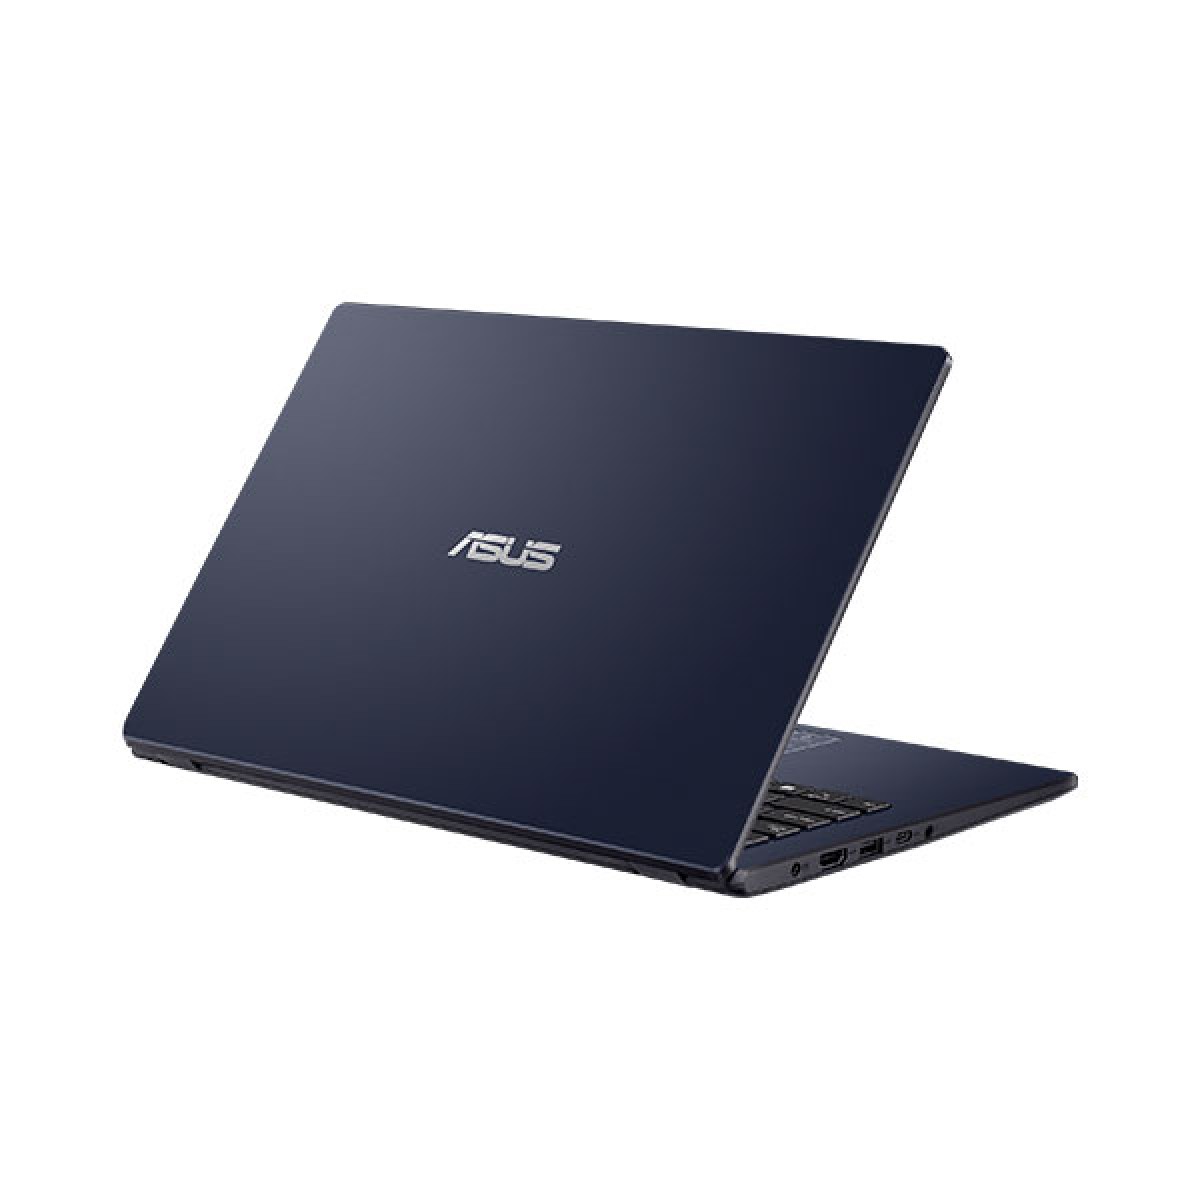 Asus Vivobook E410ma Bv2230w Intel Celeron Laptop Price In Bd